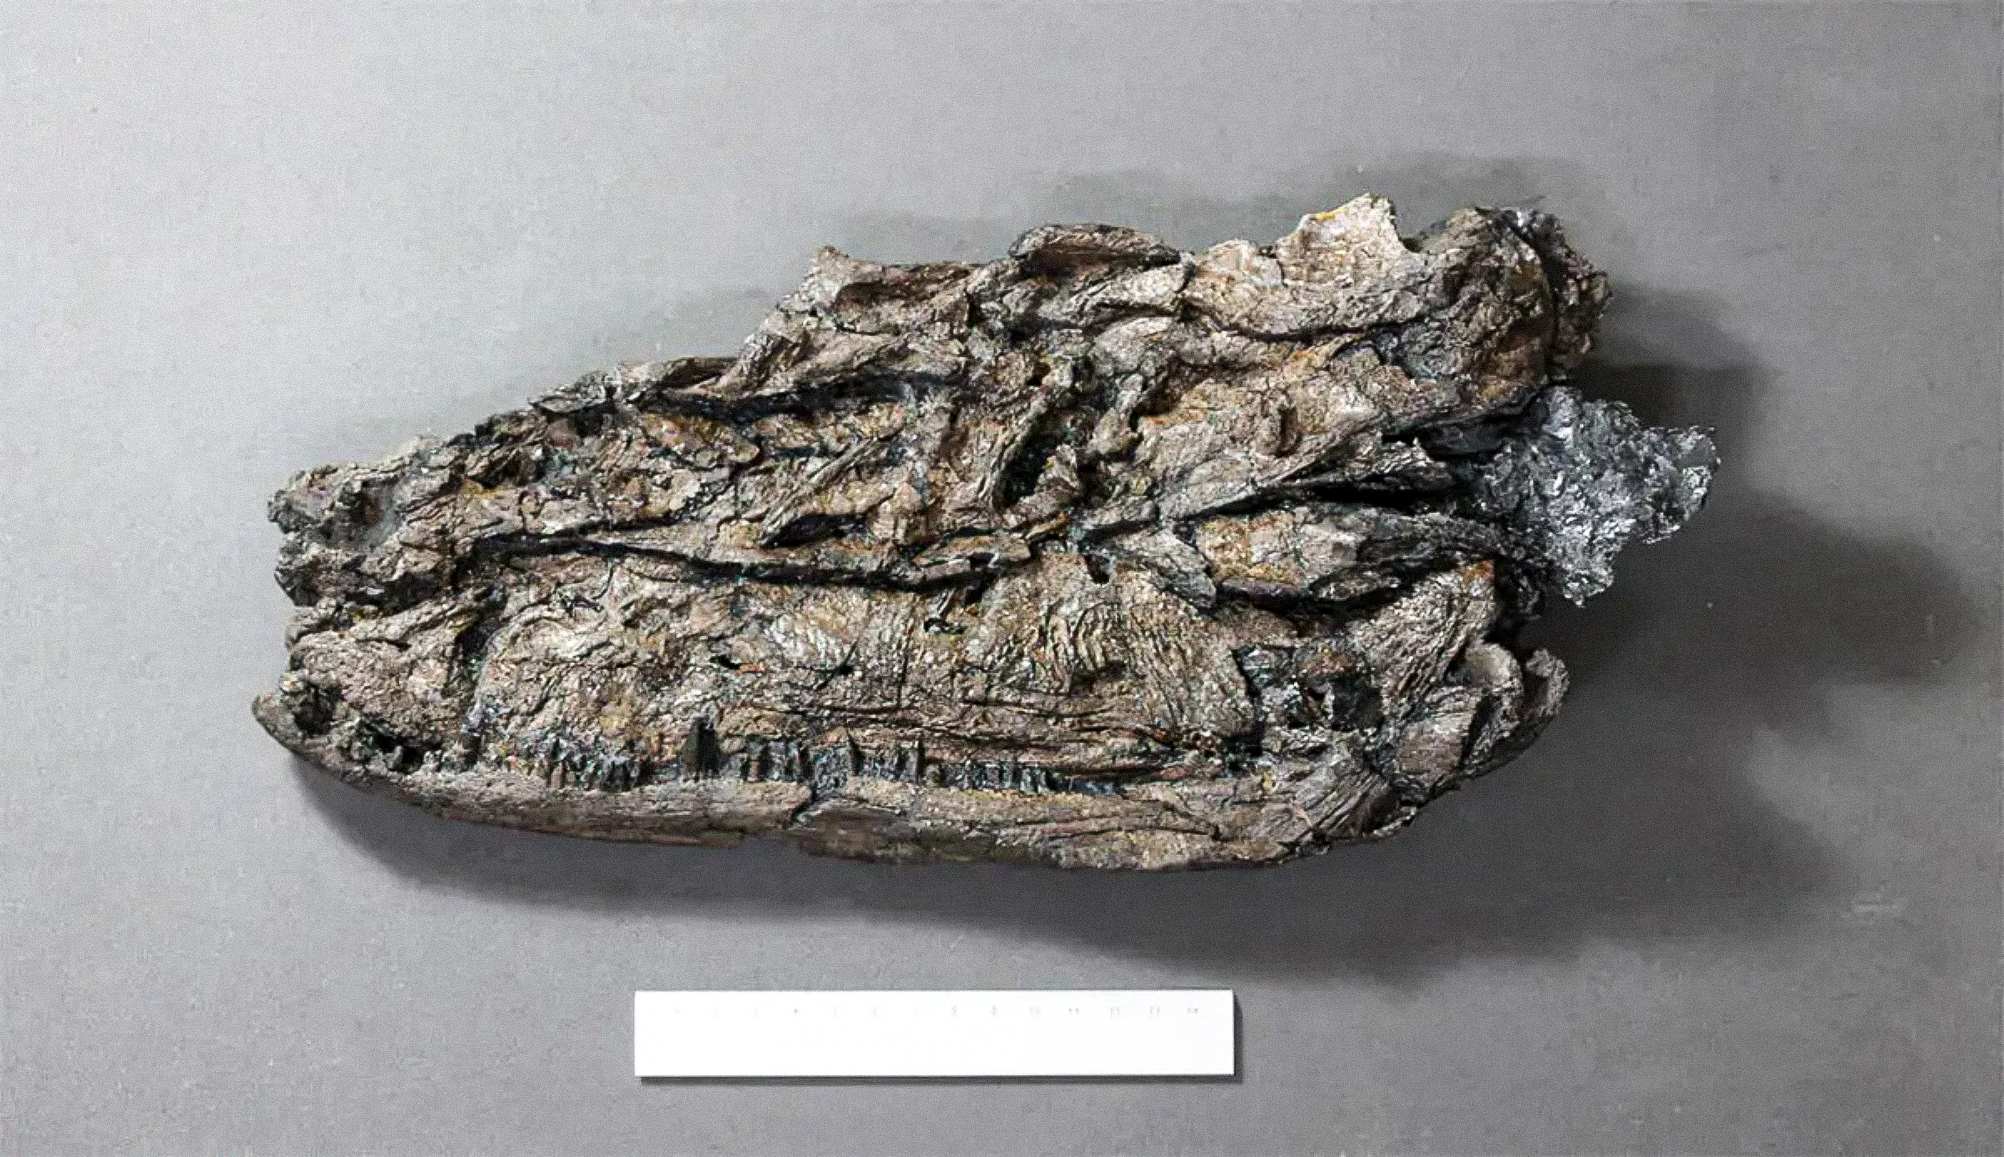 Kachitidwe ka fossilization yapangitsa kuti zitsanzo za Crassigyrinus zipanikizidwe.